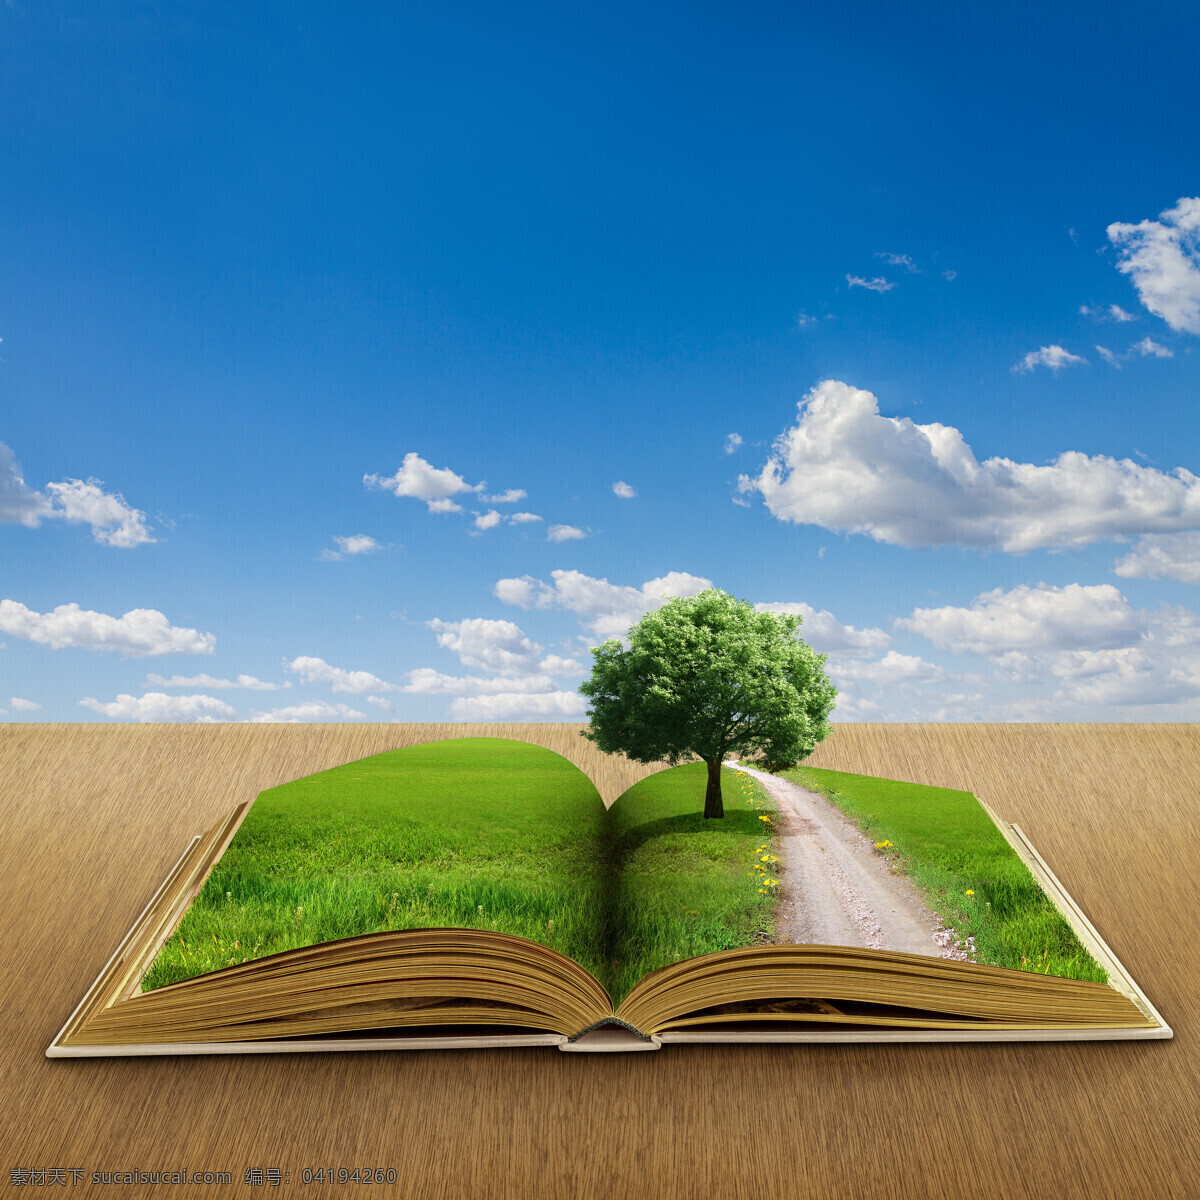 创意 书本 自然环境 蝴蝶 蓝天 白云 热气球 道路 书籍打开的书 大树草地花朵 书本天空绿色 环保景区 自然风景 自然景观 蓝色